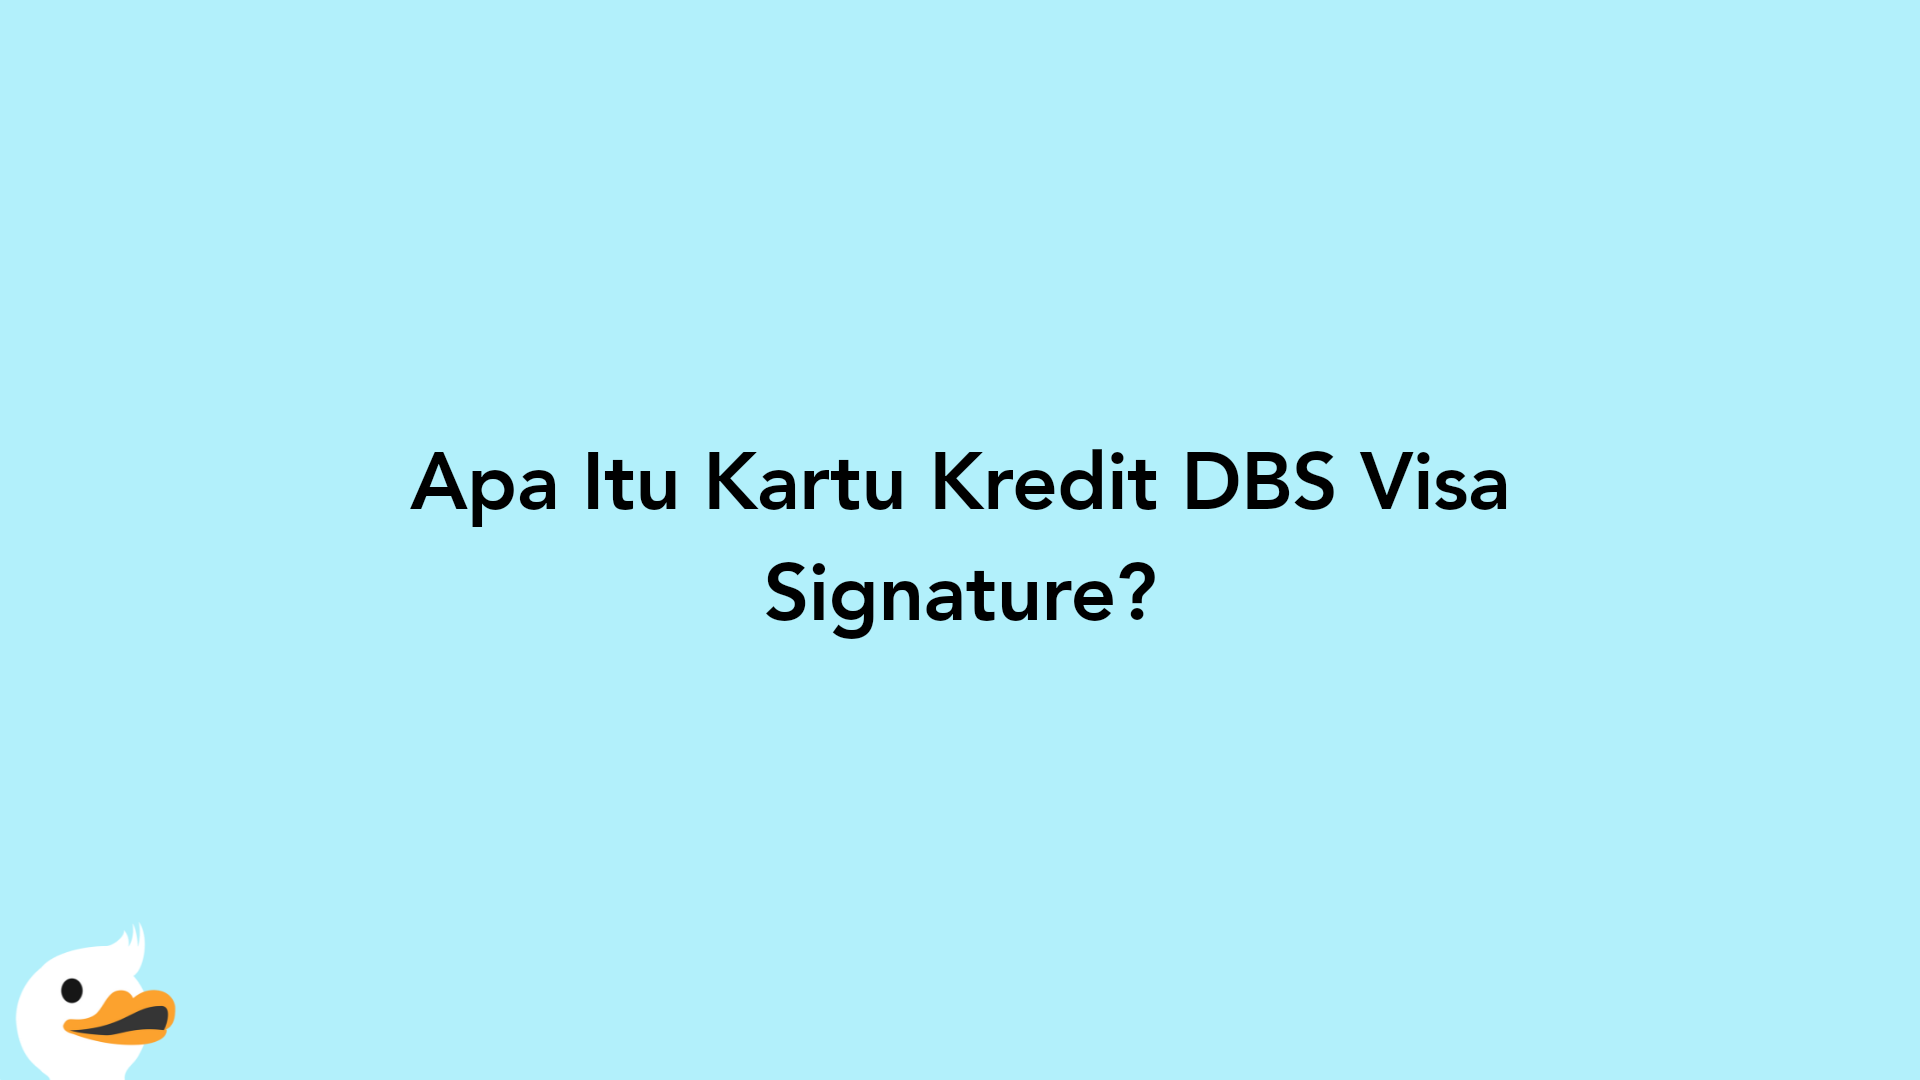 Apa Itu Kartu Kredit DBS Visa Signature?